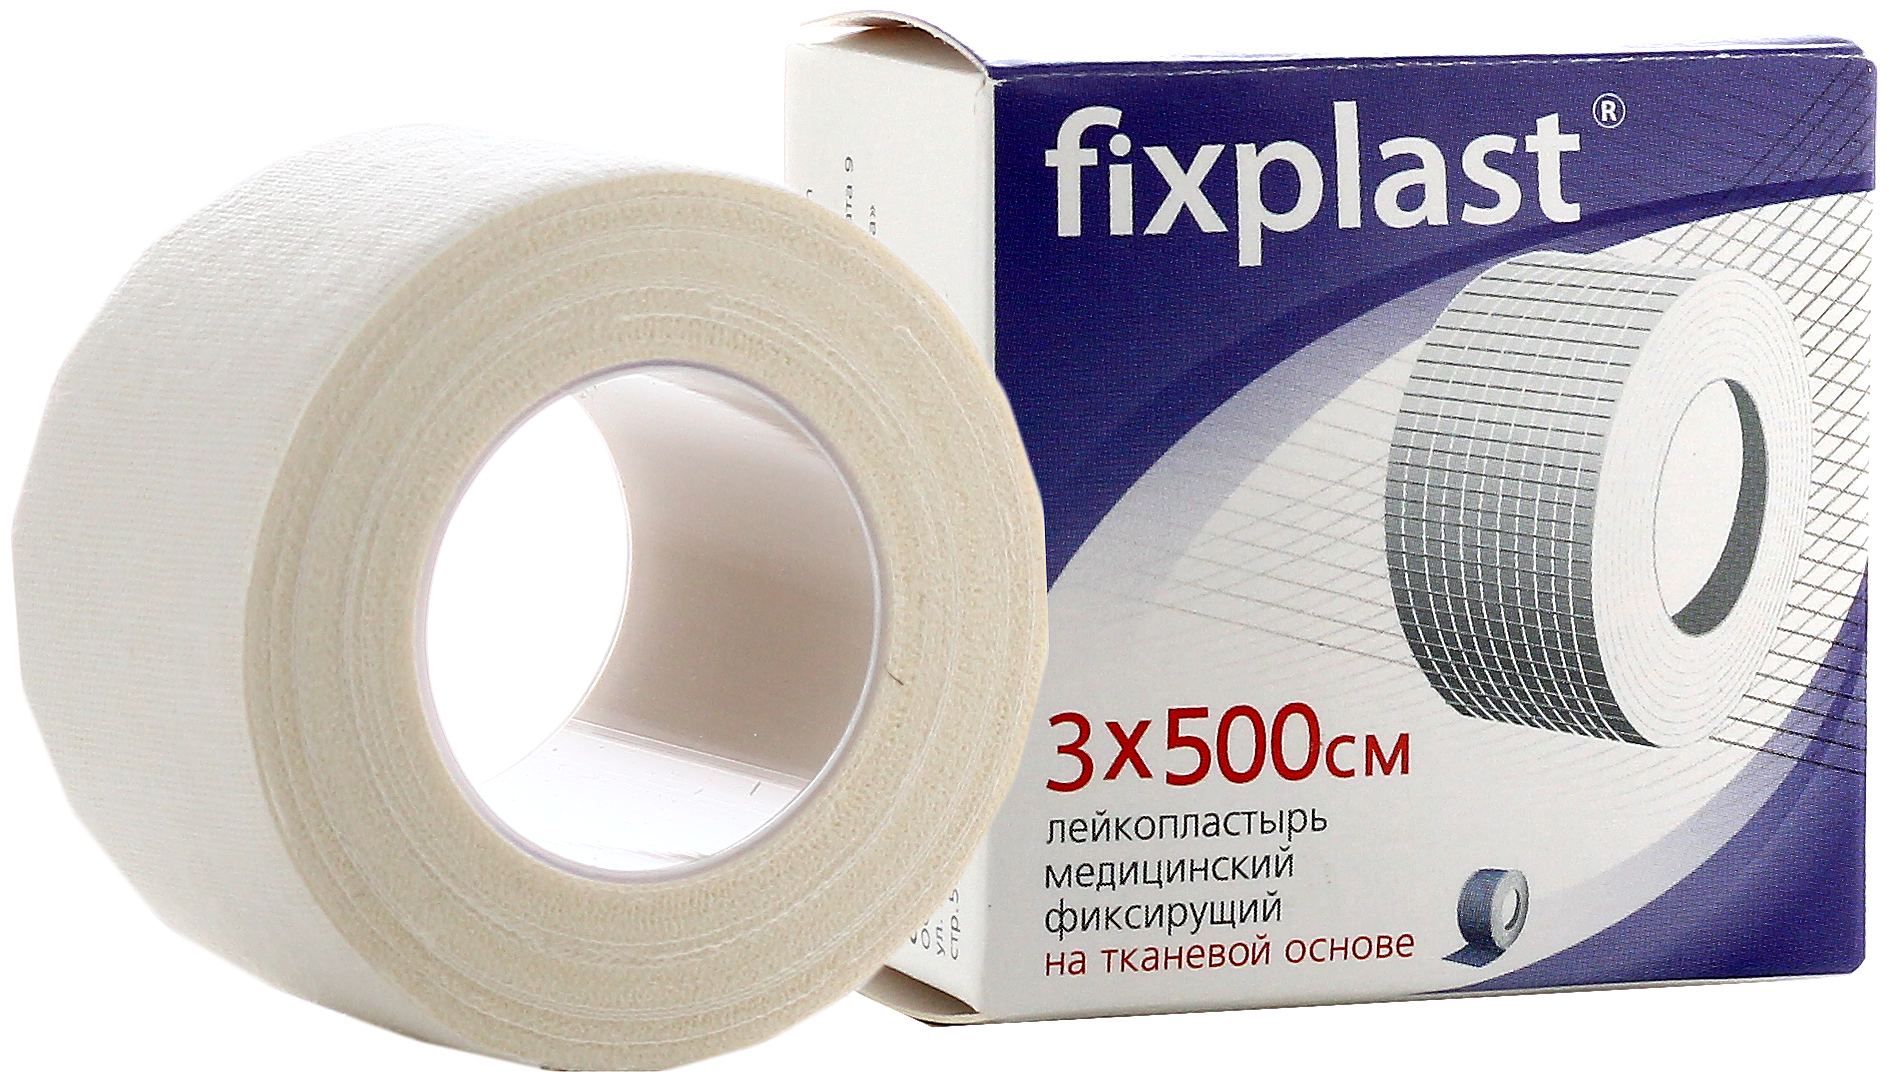 Fixplast Лейкопластырь медицинский фиксирующий тканевая основа 3х500см